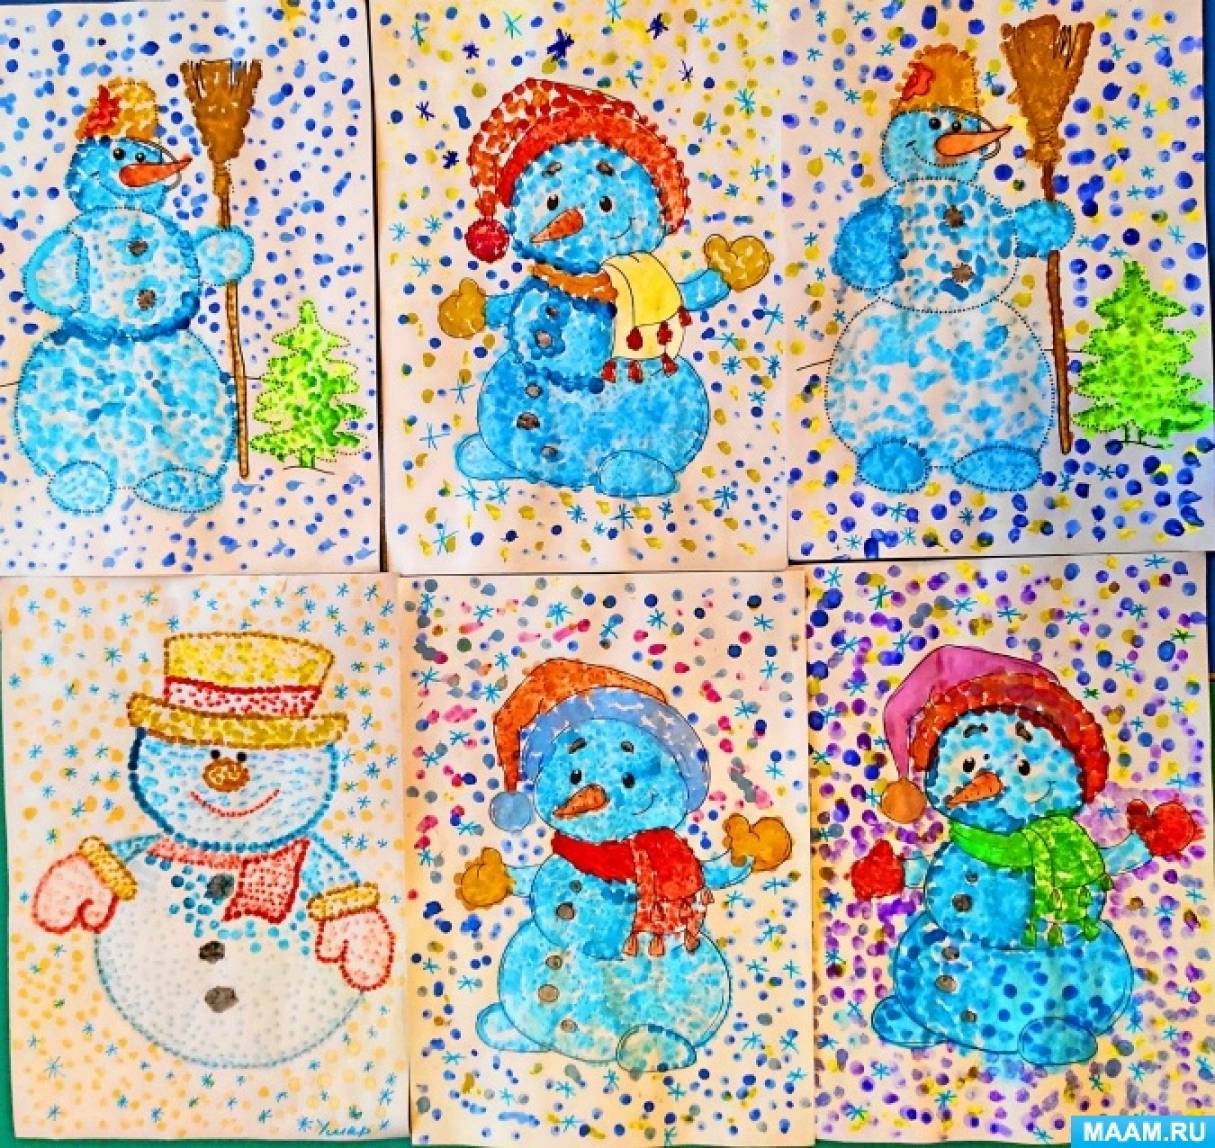 Конспект занятия по нетрадиционной техники рисования ватными палочками (Пуантография) в средней группе «Снеговик»